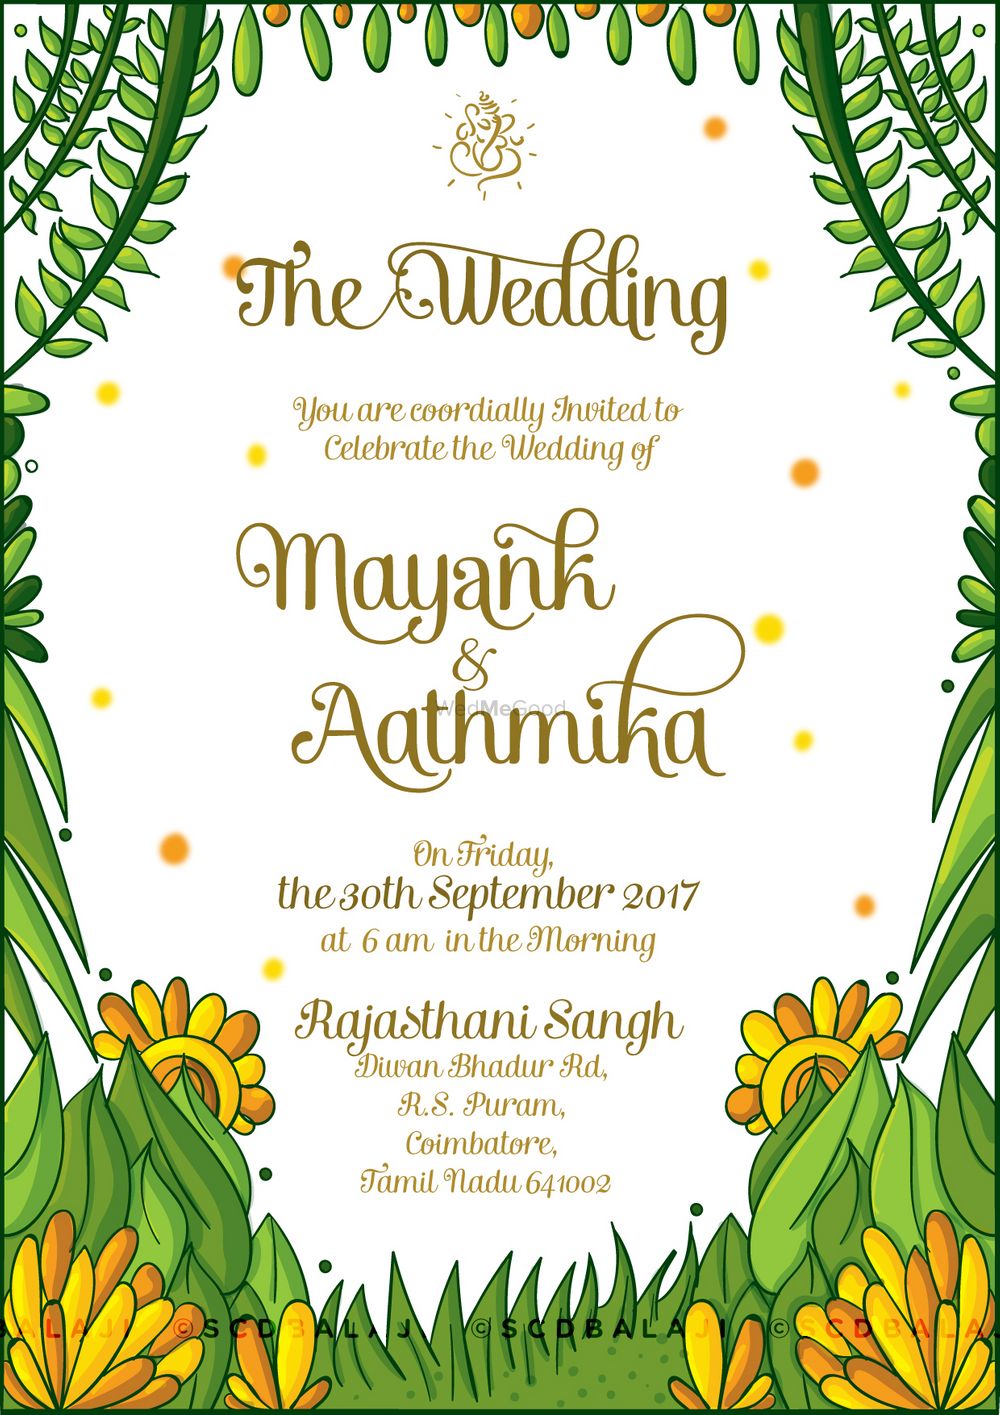 Photo From Maharashtrian Wedding Invite - By Quirky Invitations